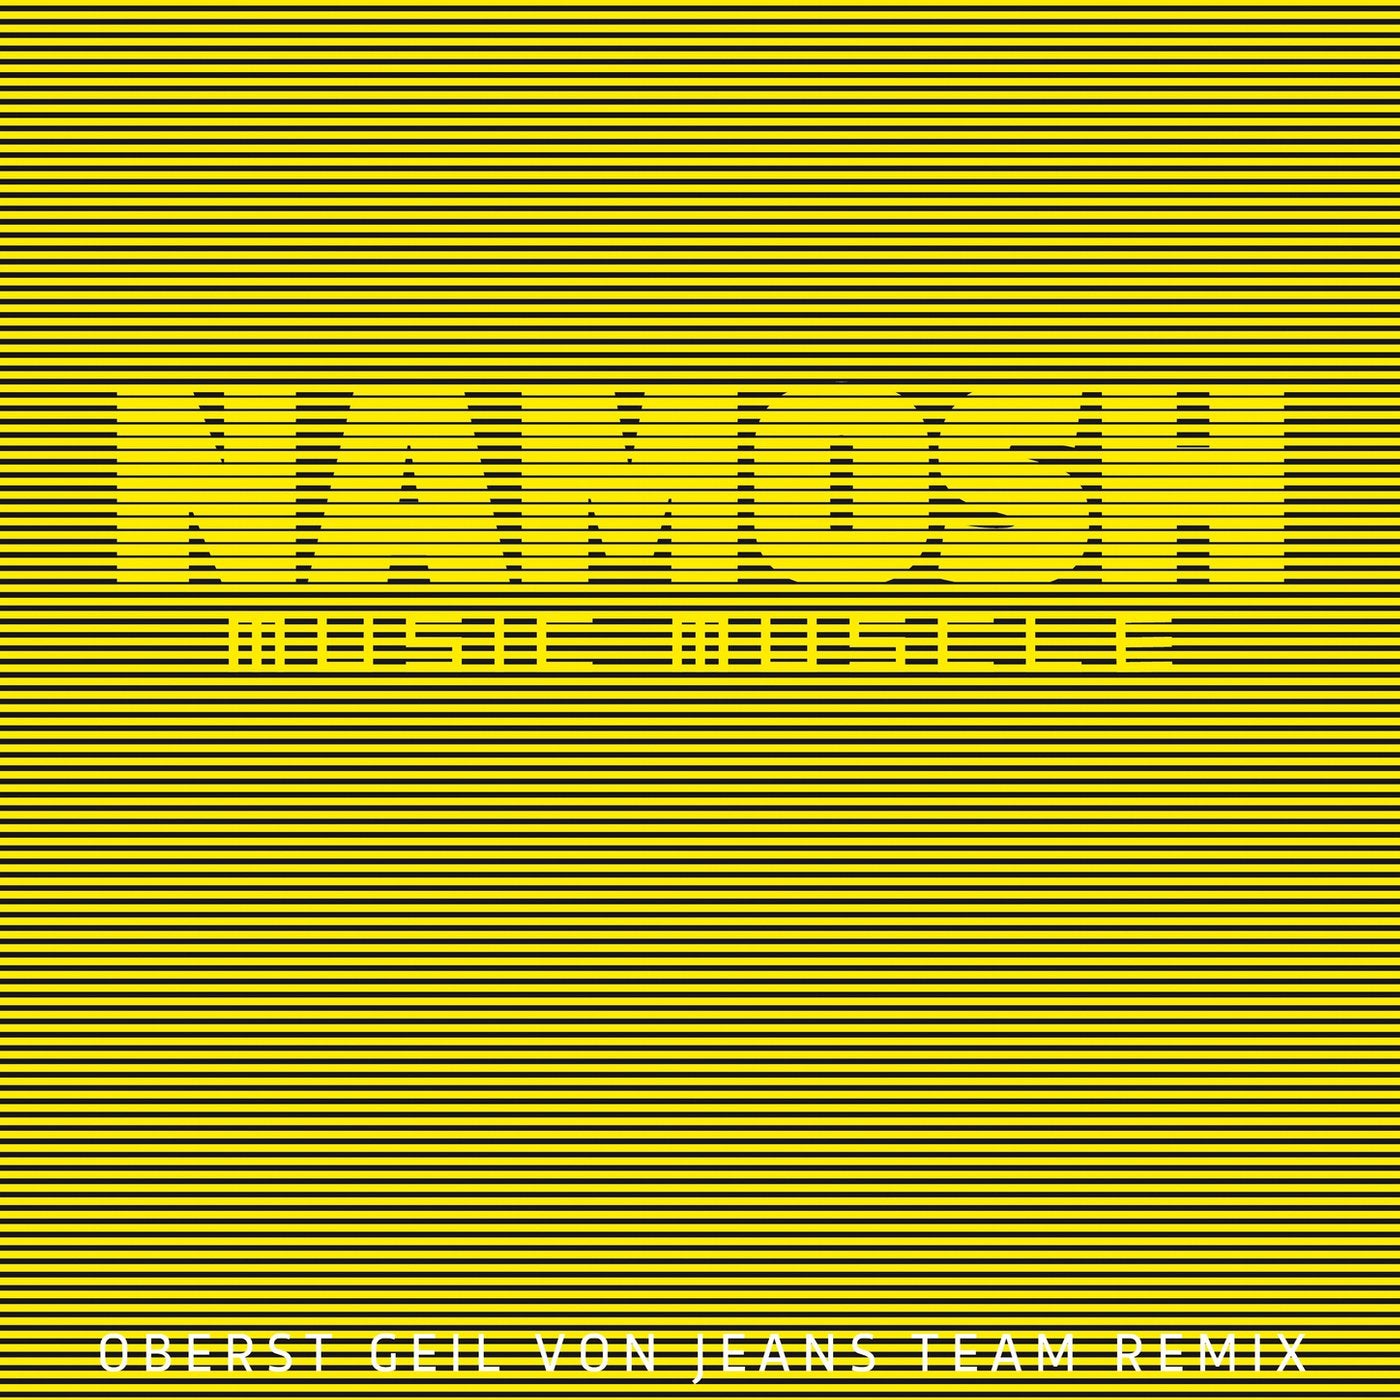 Music Muscle (Oberst Geil von Jeans Team Remix)